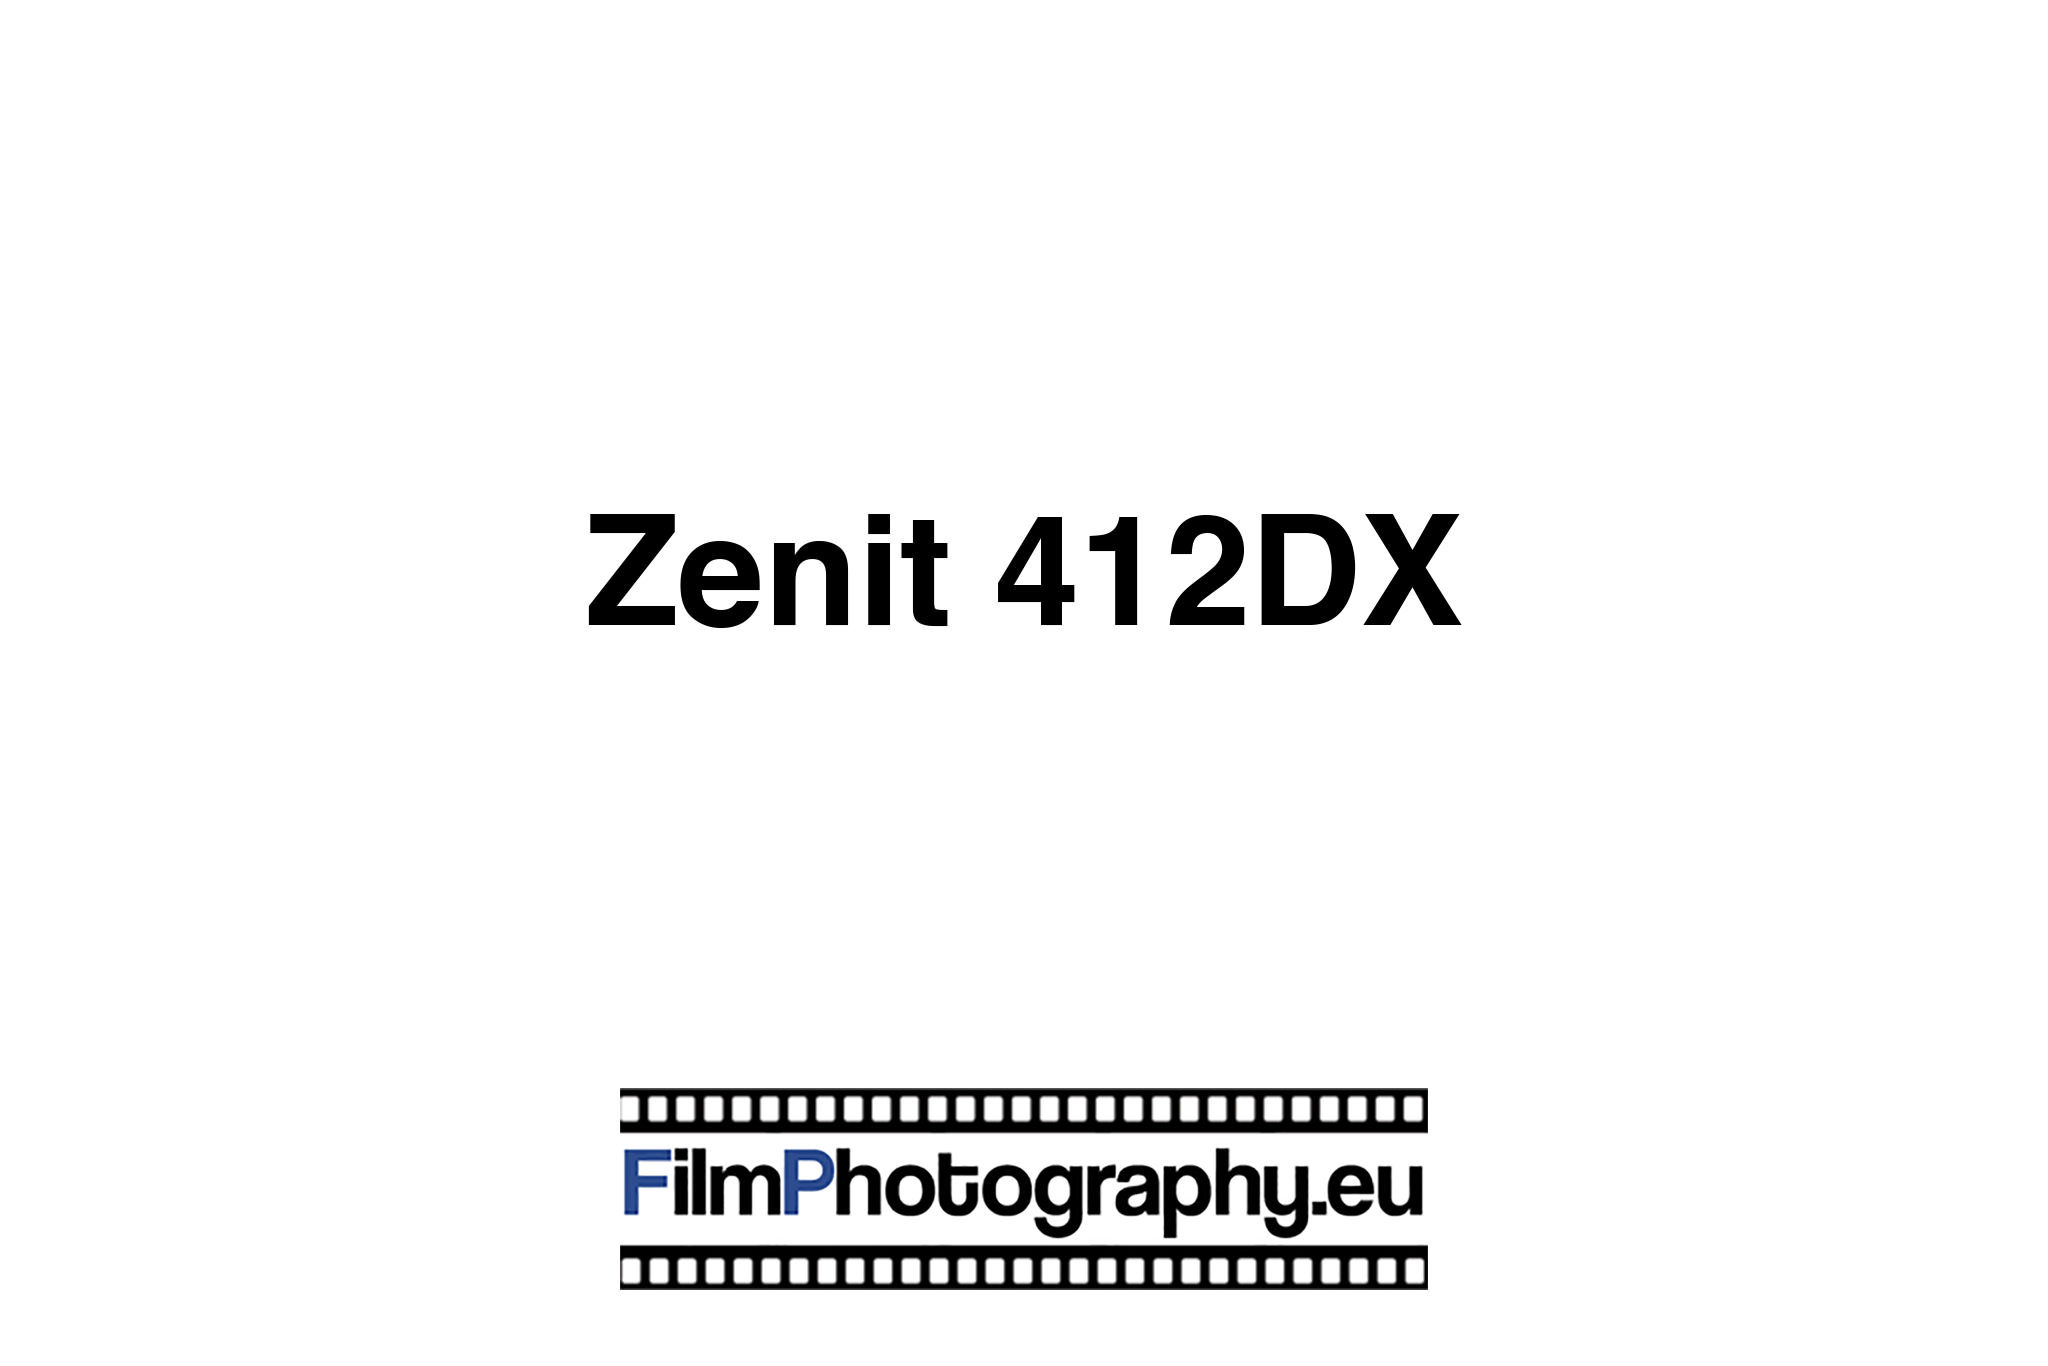 Zenit 412DX - Eine moderne russische SLR